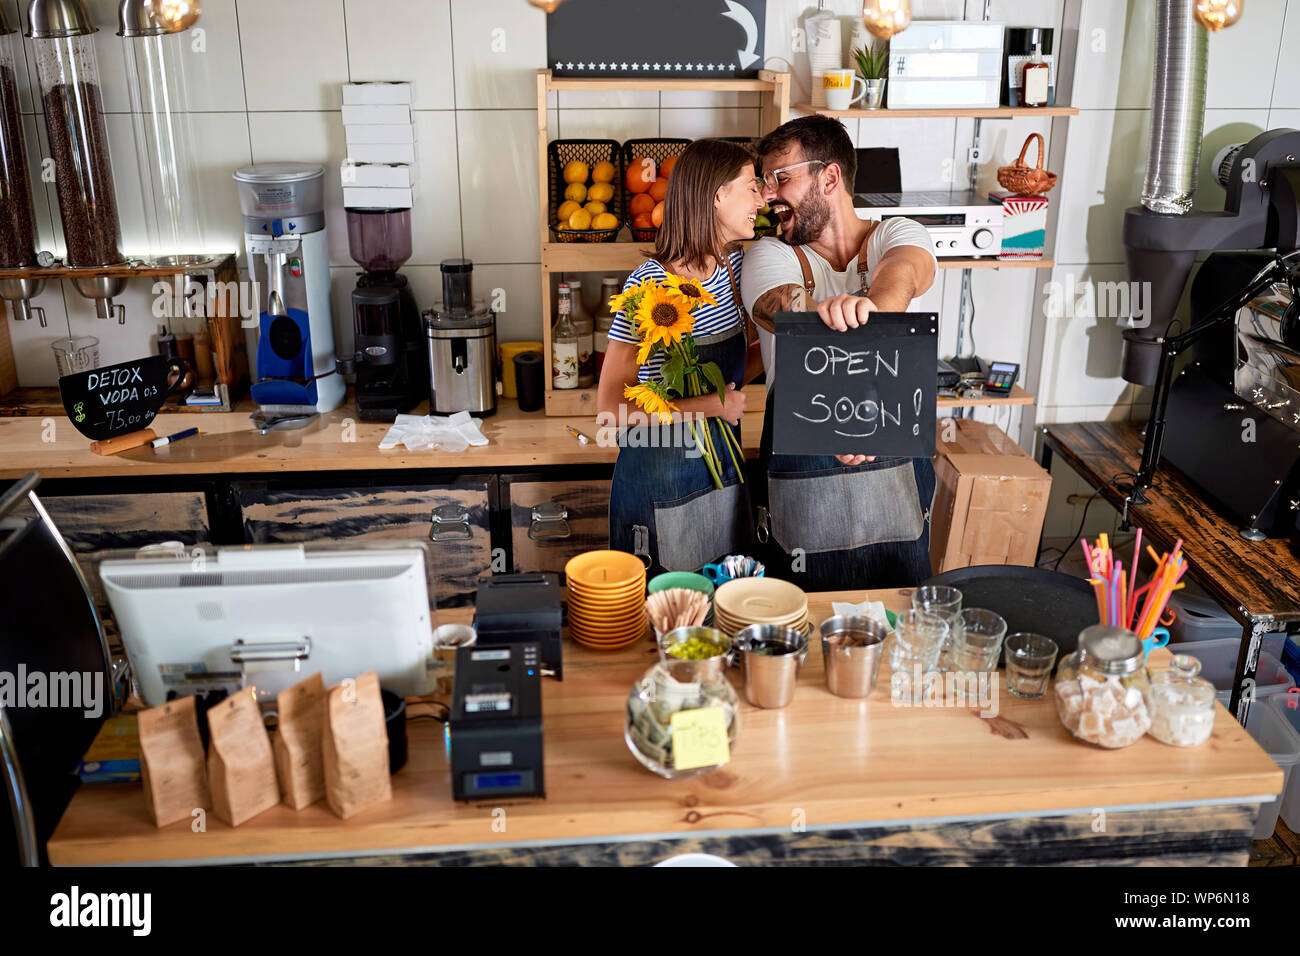 Il coffee bar è aperto - Happy uomo e donna proprietario con open firmare nel loro negozio cafe. Foto Stock